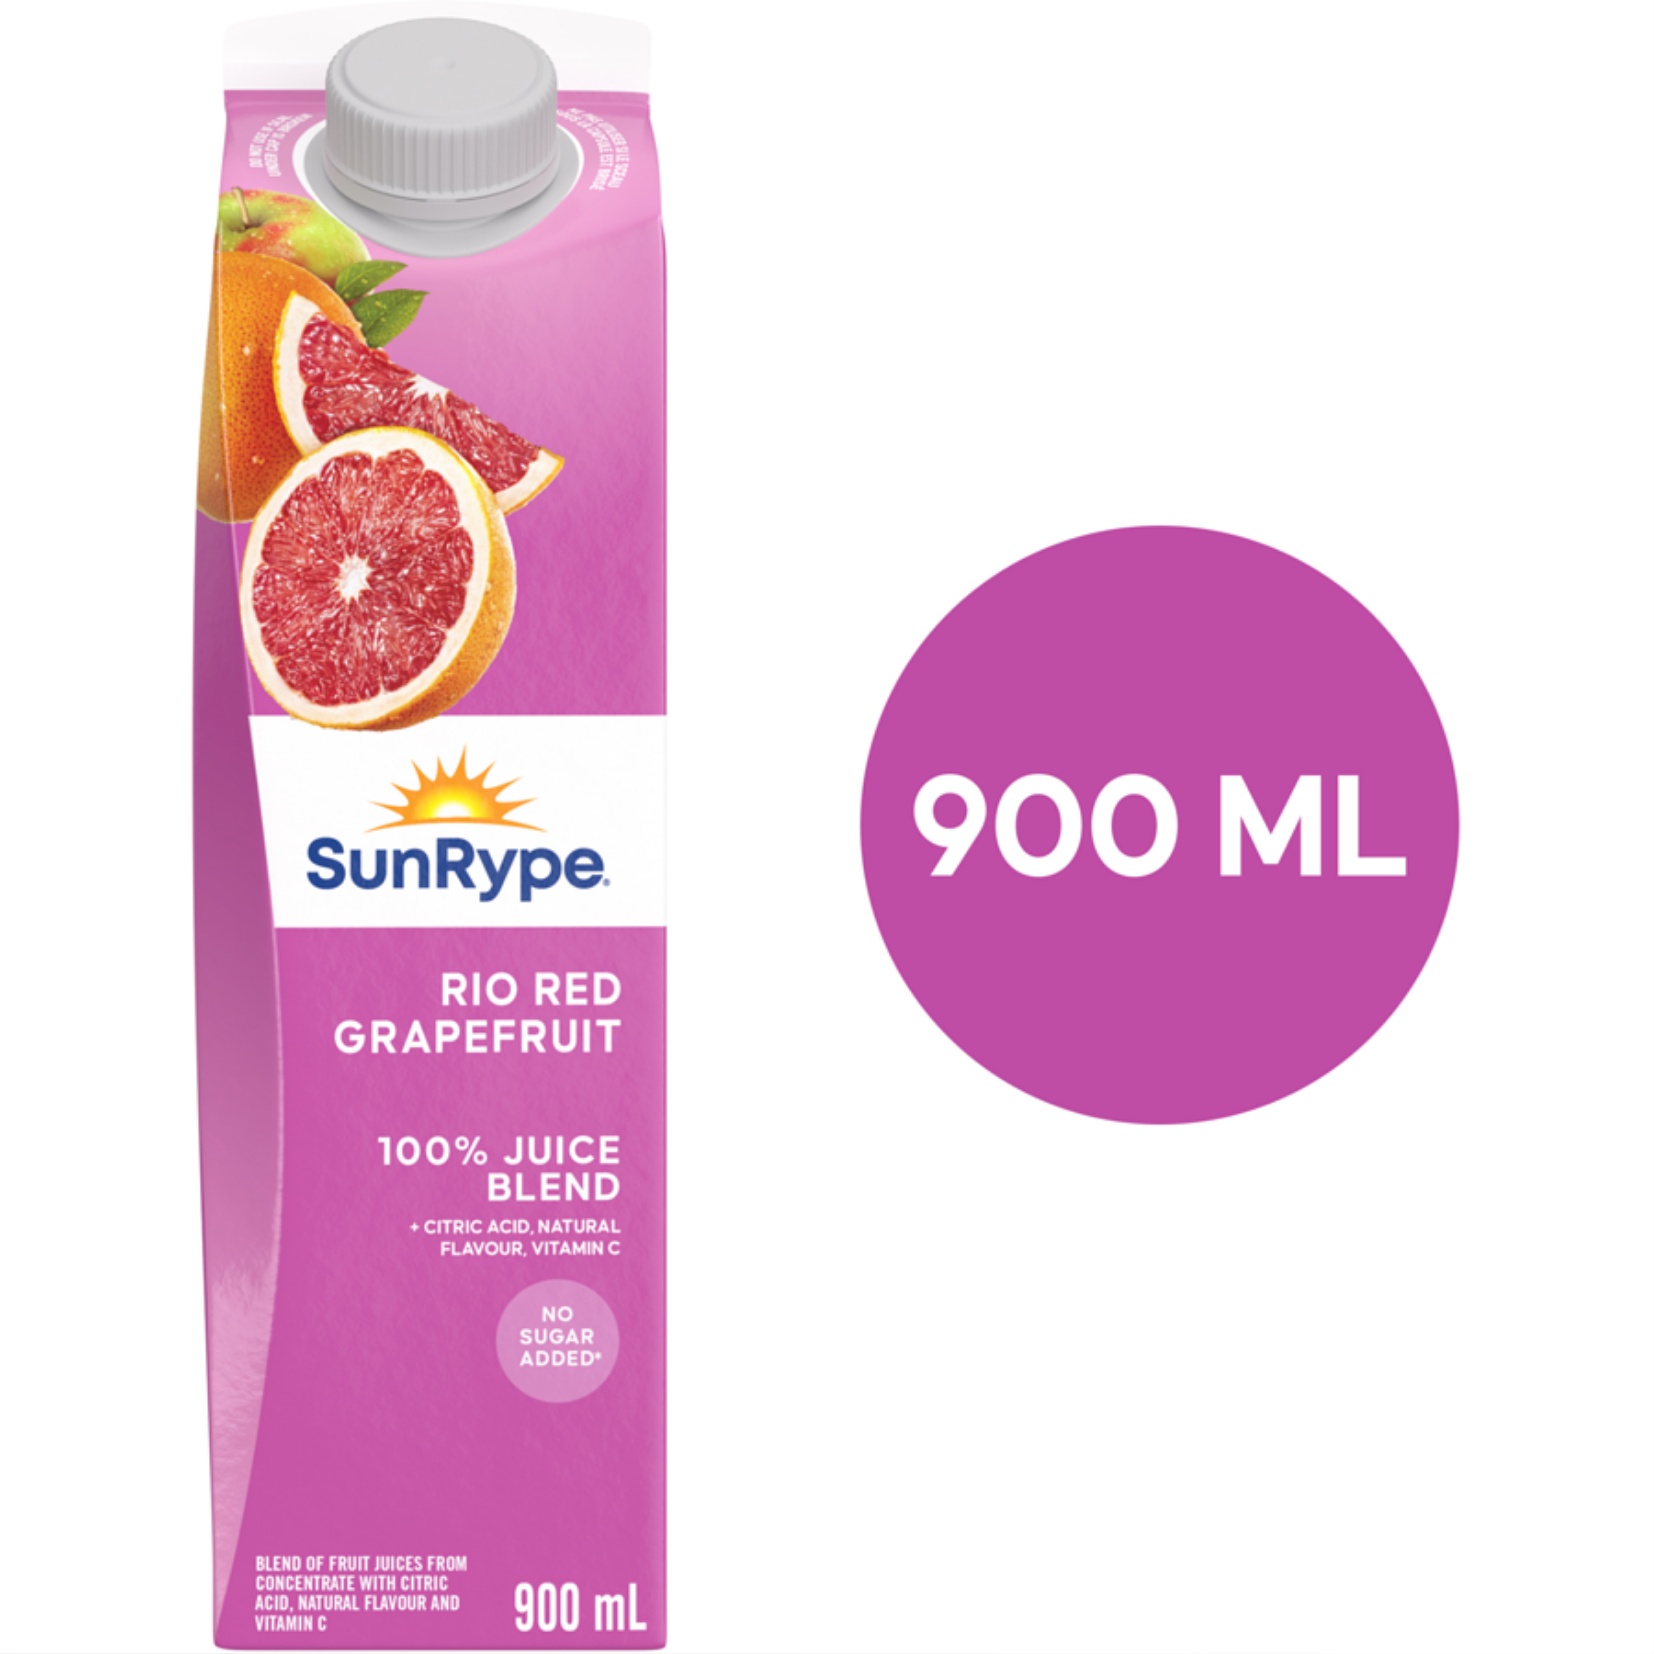 SunRype Rio Red Grapefruit Juice 900 ml